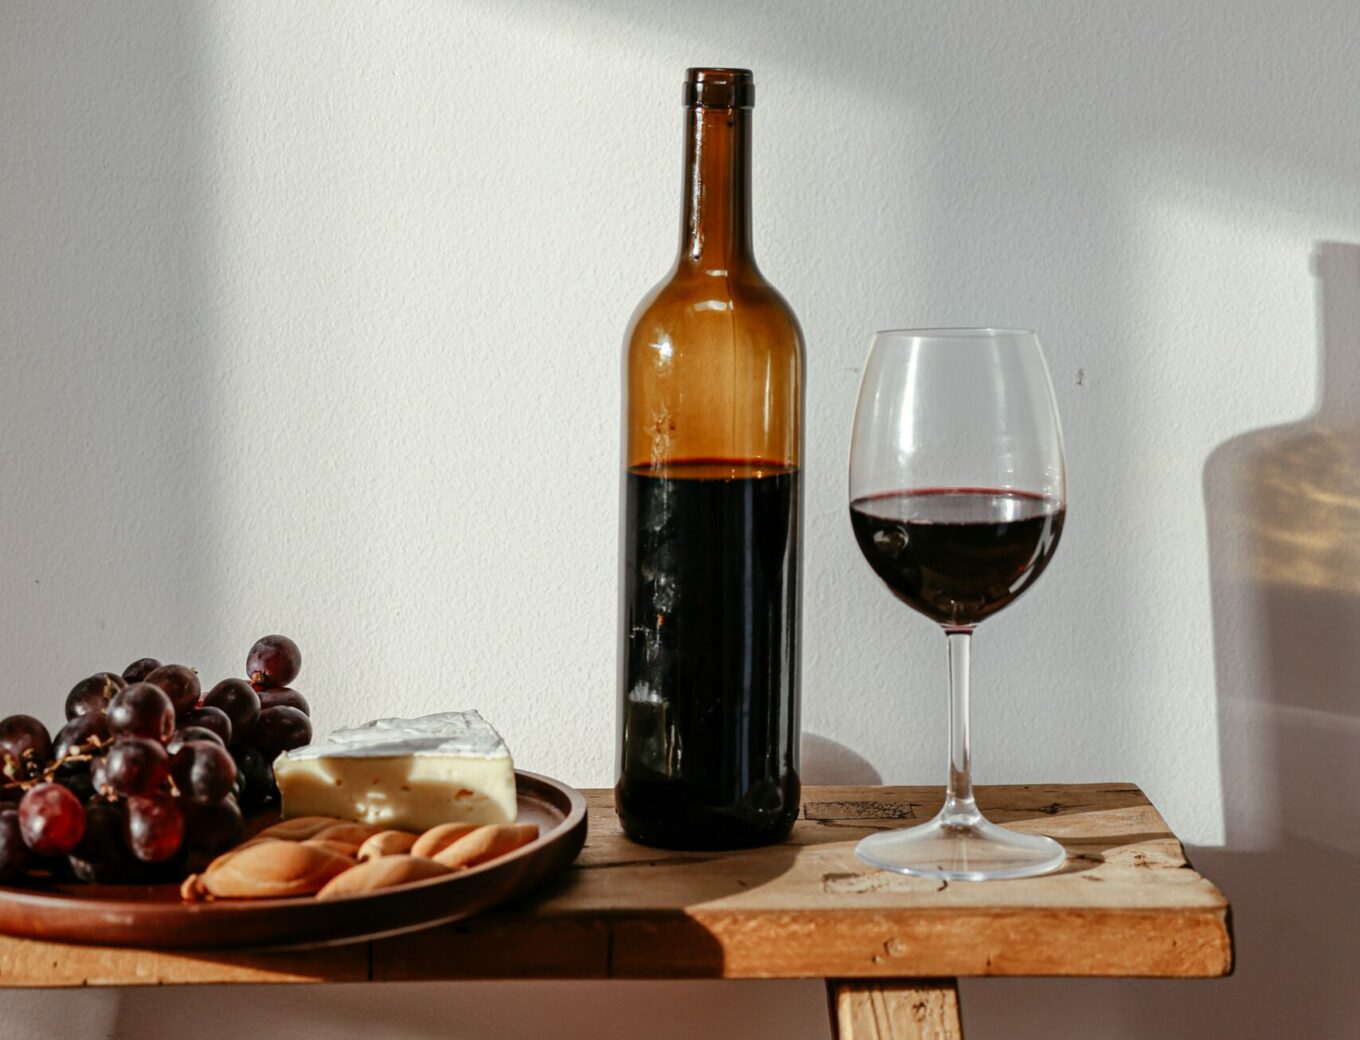 cadeau wijndrinker - luxe wijn cadeau - wijnproeverij thuis cadeau - kaasplankje met wijn cadeau - brievenbus cadeau wijn - wijn cadeau tips - cadeau tips